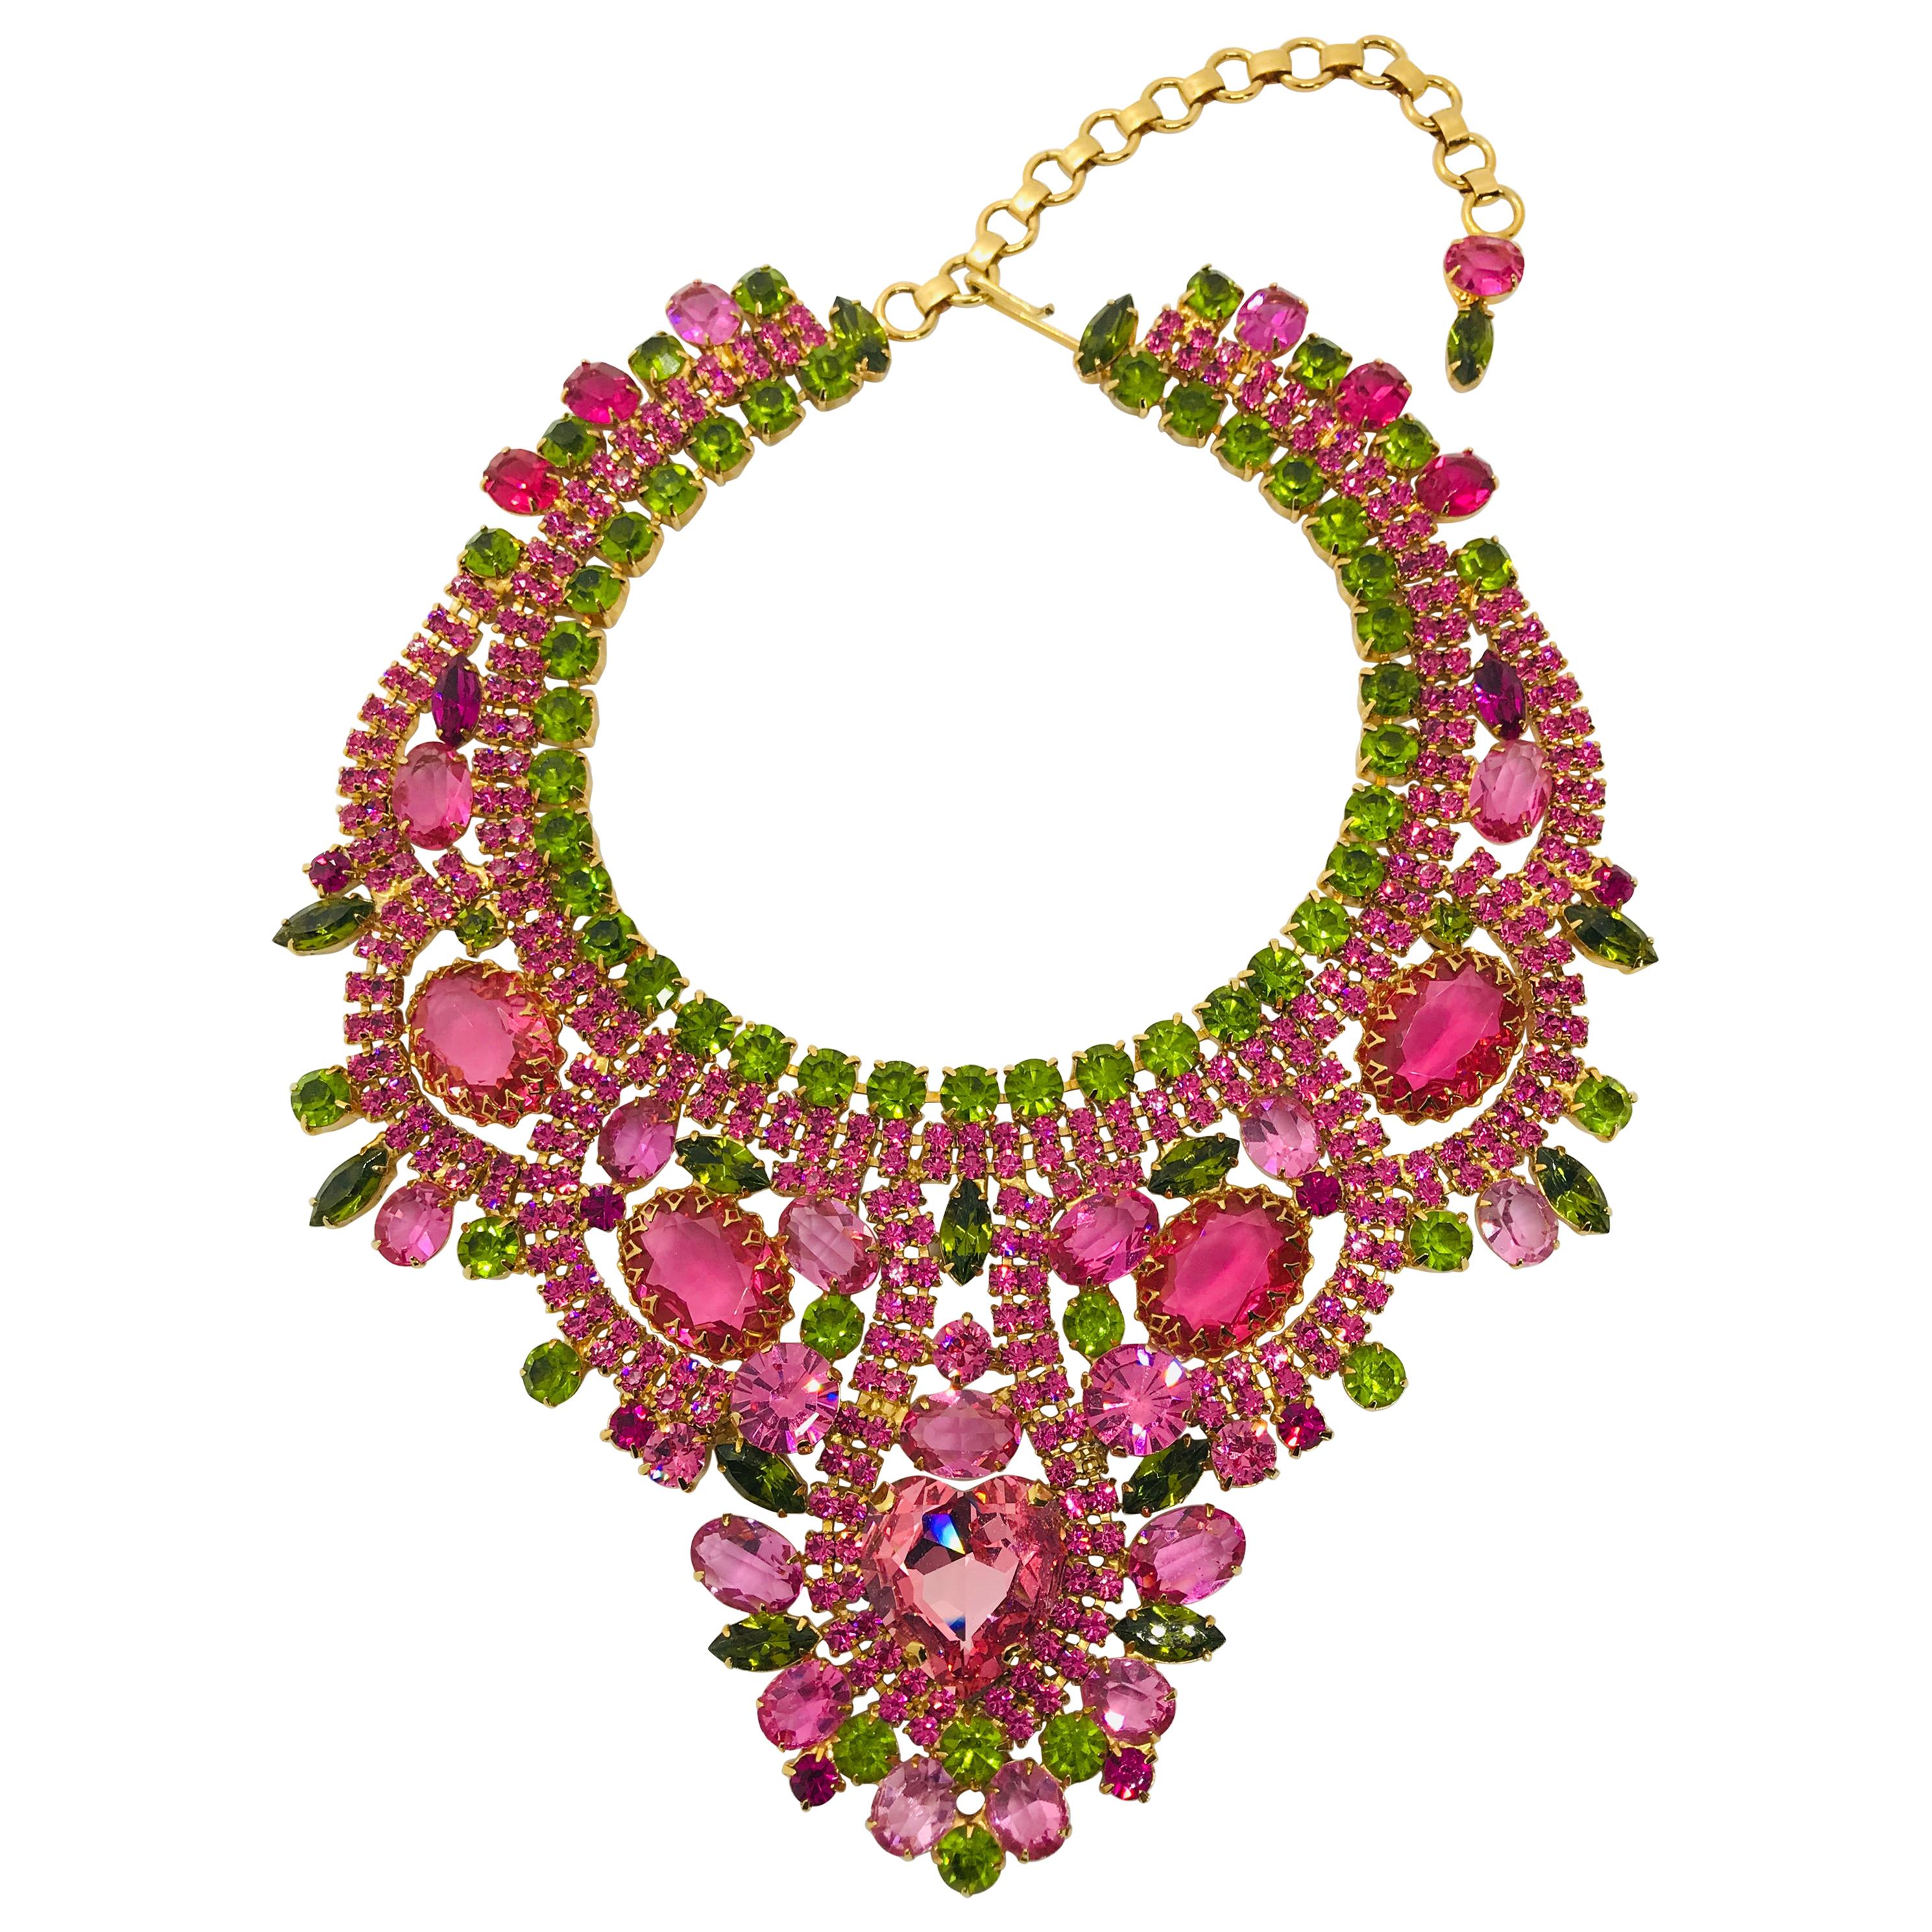 Rose and Olivine Vintage Swarovski Crystal Bib Necklace with Heart Center For Sale